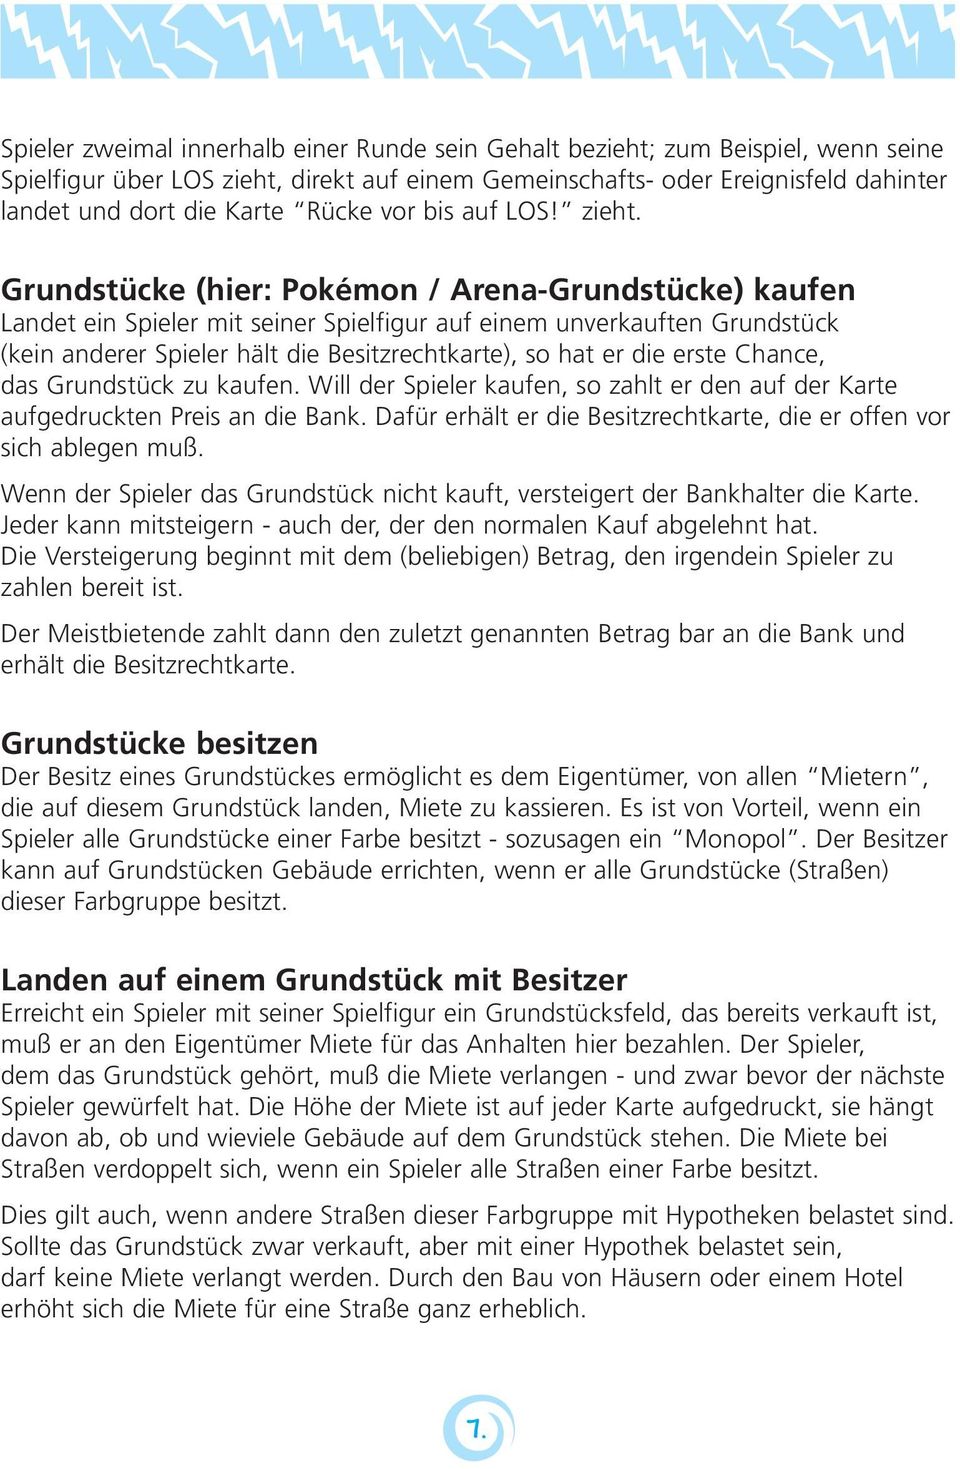 Grundstücke (hier: Pokémon / Arena-Grundstücke) kaufen Landet ein Spieler mit seiner Spielfigur auf einem unverkauften Grundstück (kein anderer Spieler hält die Besitzrechtkarte), so hat er die erste